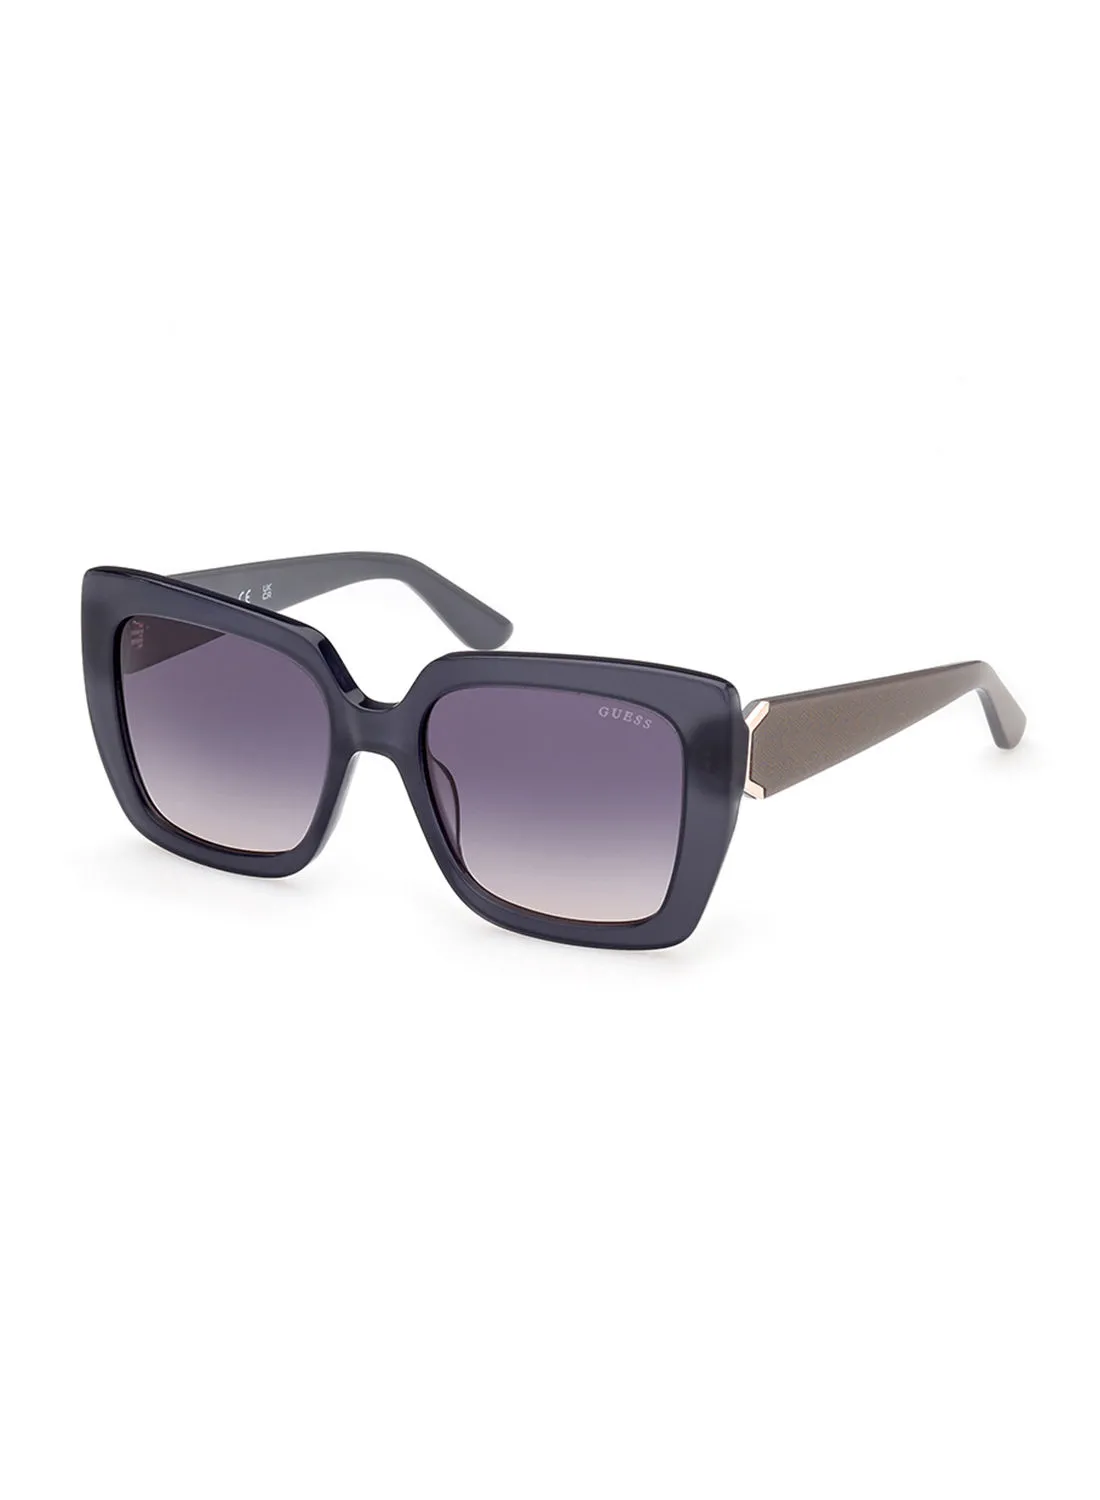 GUESS Sunglasses For Women GU788920B53